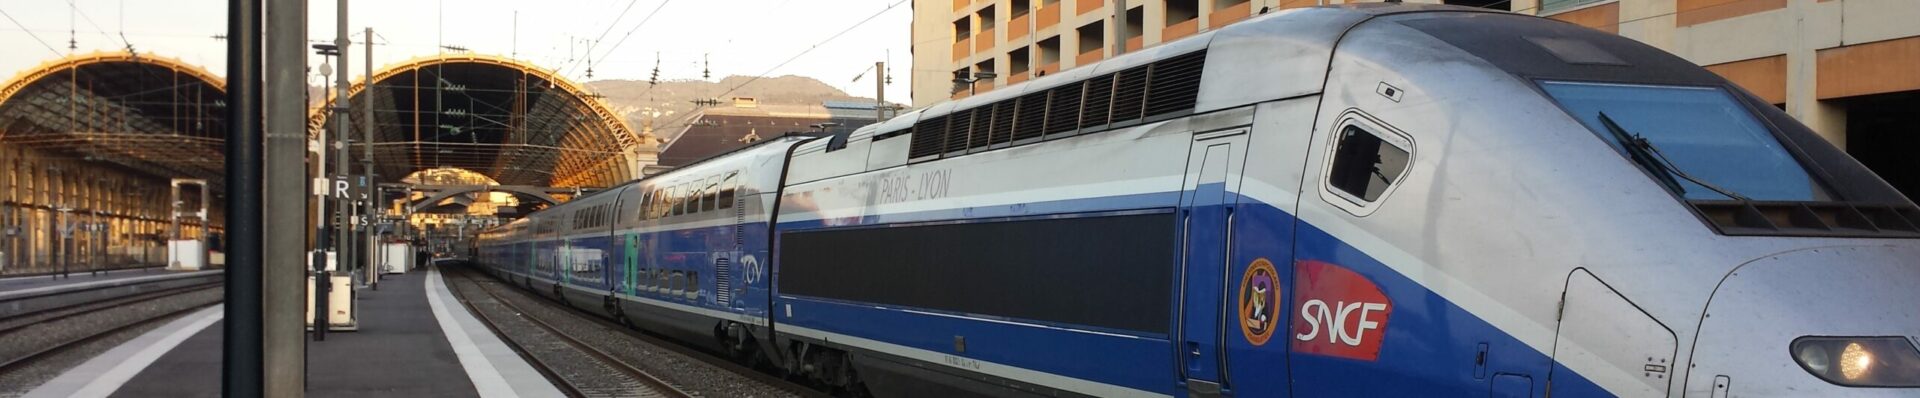 La Marseillaise: Le train régional veut se remettre sur les rails